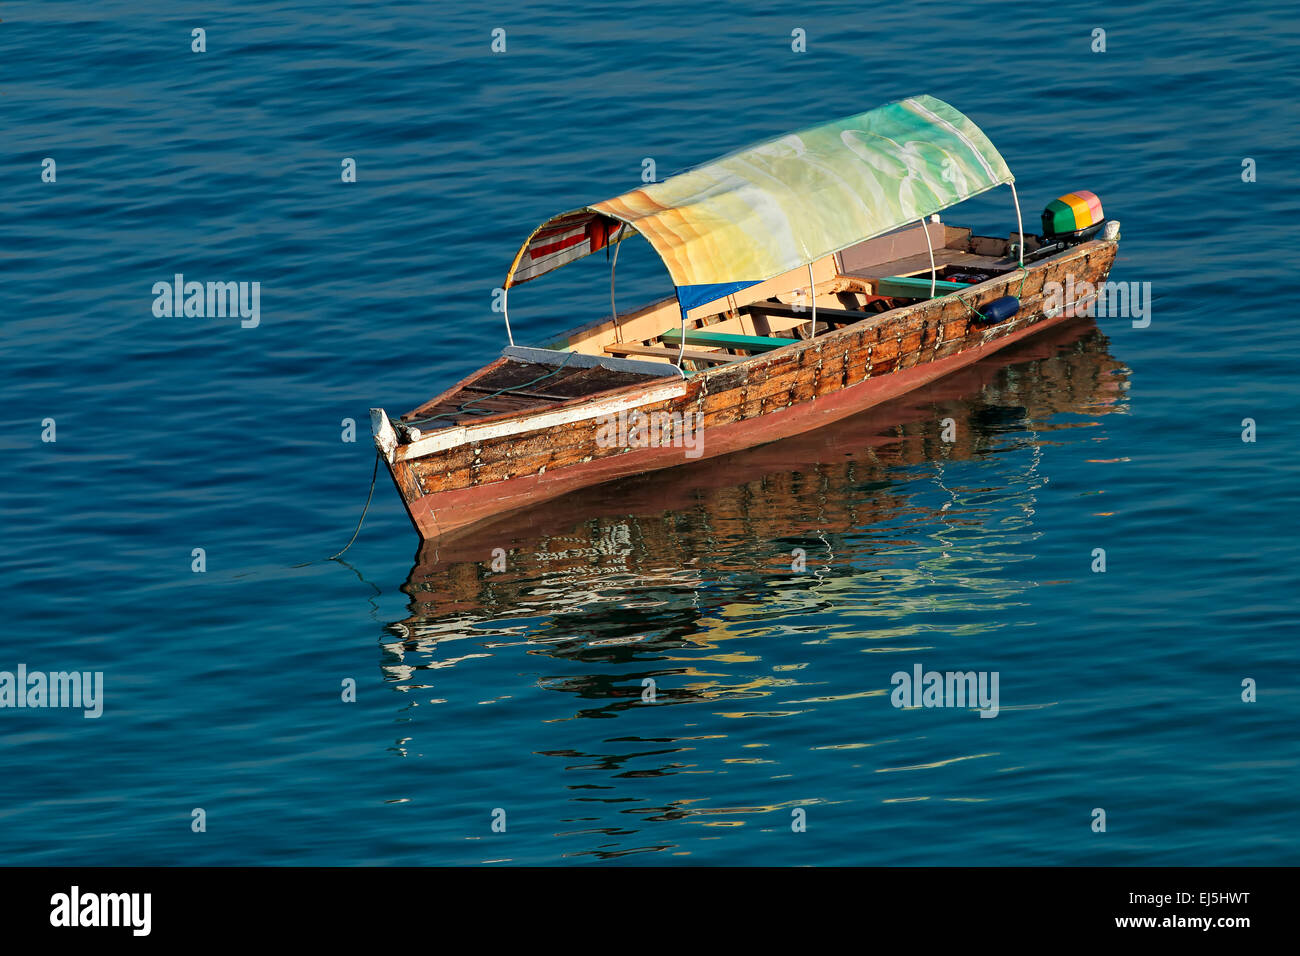 Barco de madera anclado con reflejo en el agua, la isla de Zanzíbar Foto de stock